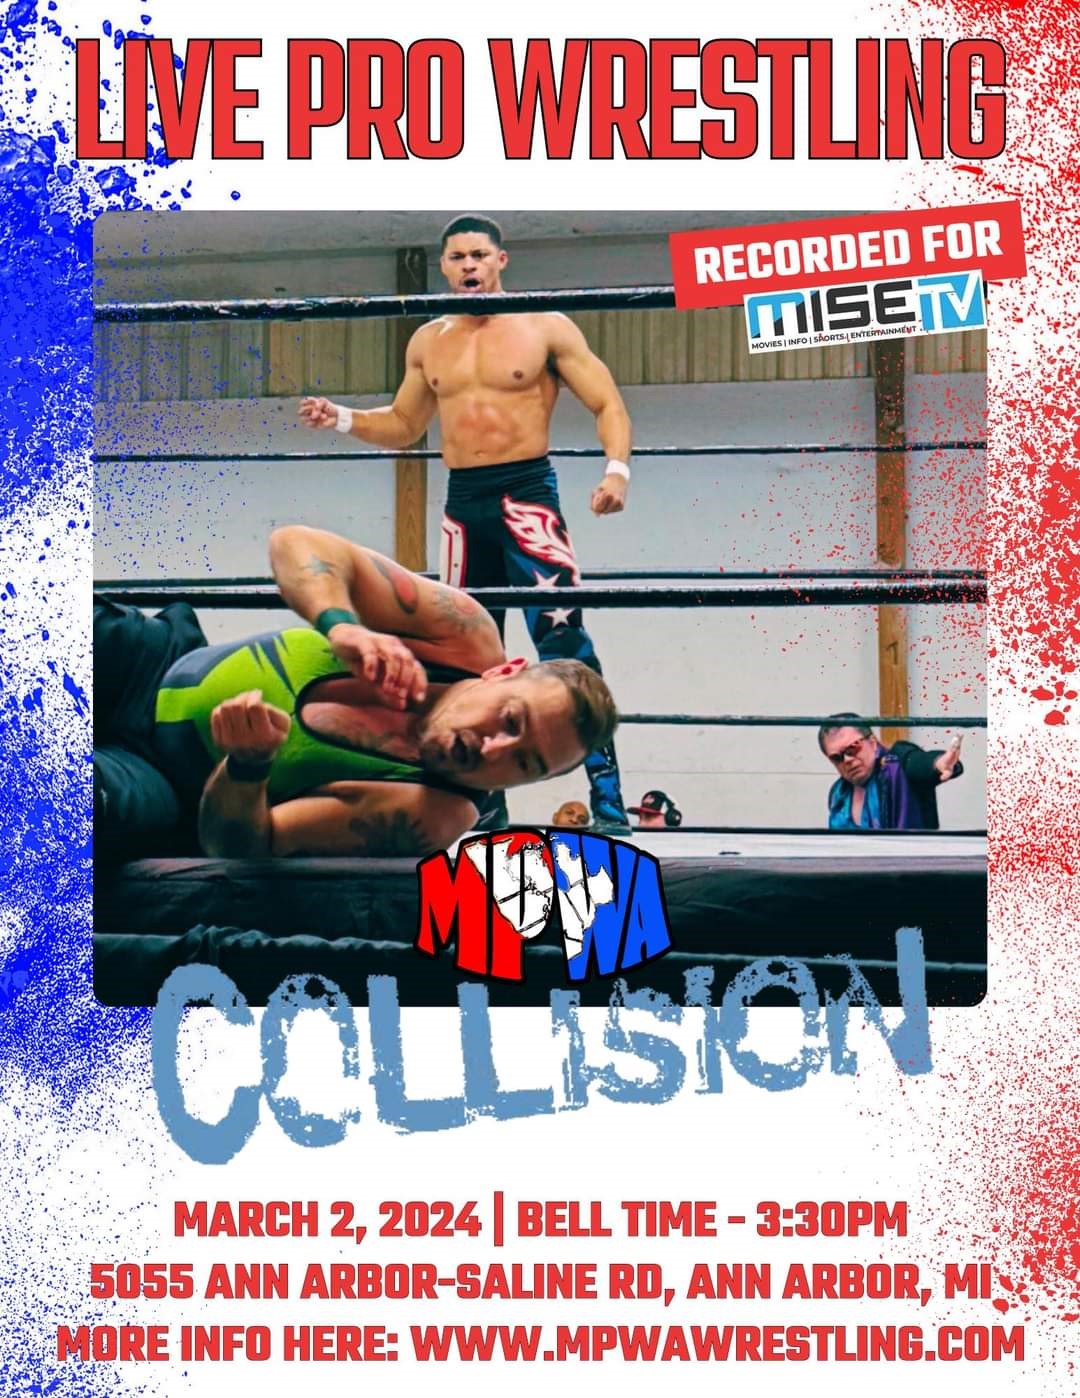 Collision X MISETV taping season 3 on mars 02, 15:30@Washtenaw Event Center & Fairgrounds - Achetez des billets et obtenez des informations surMidwest Pro Wrestling Alliance 